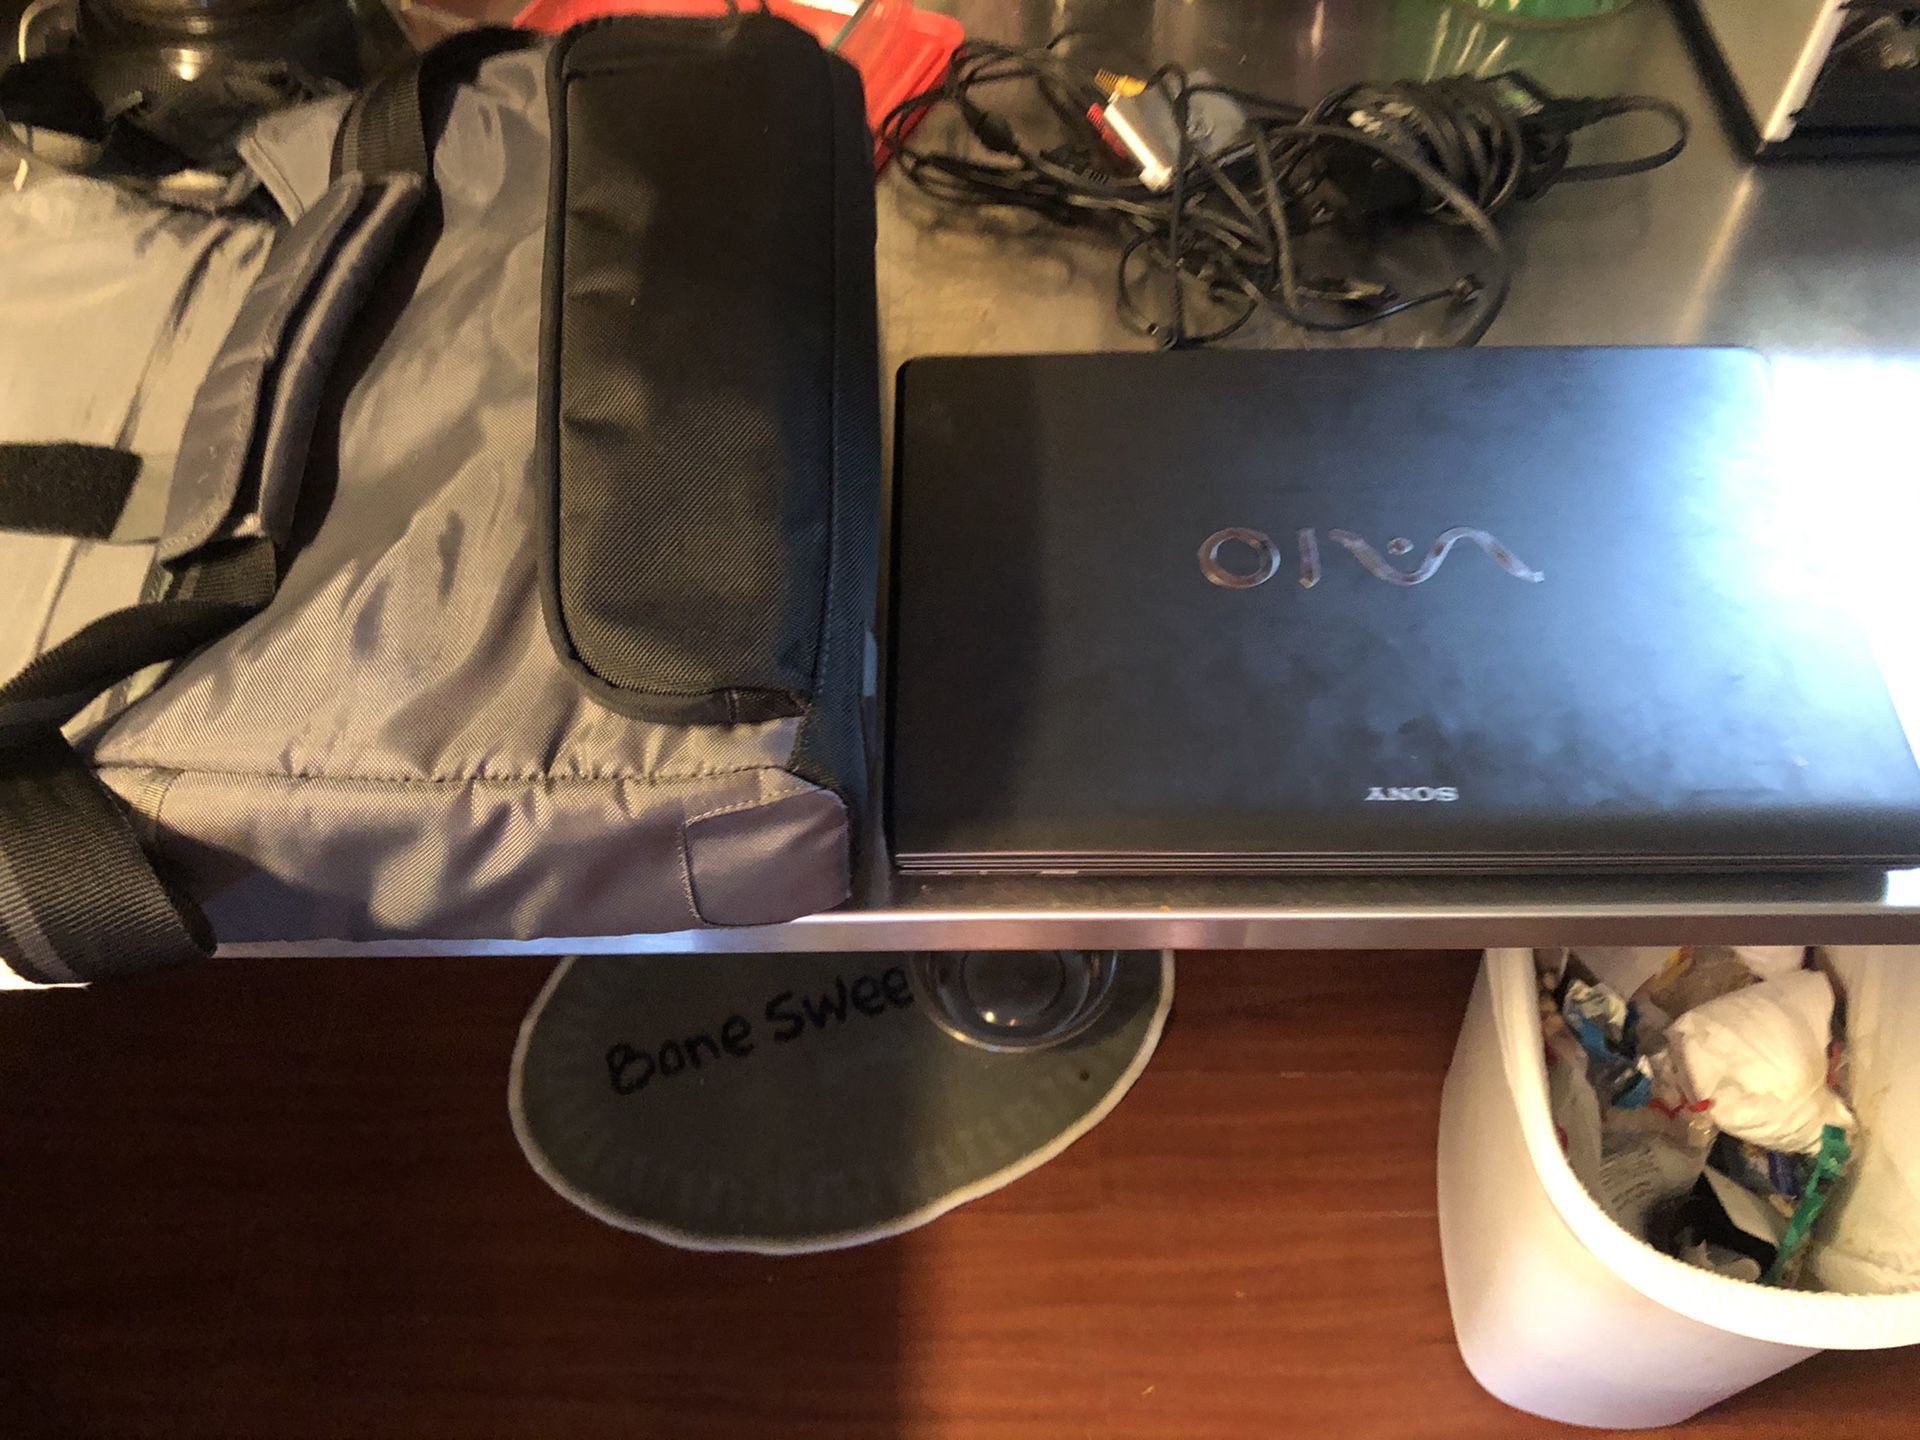 Sony Viao laptop